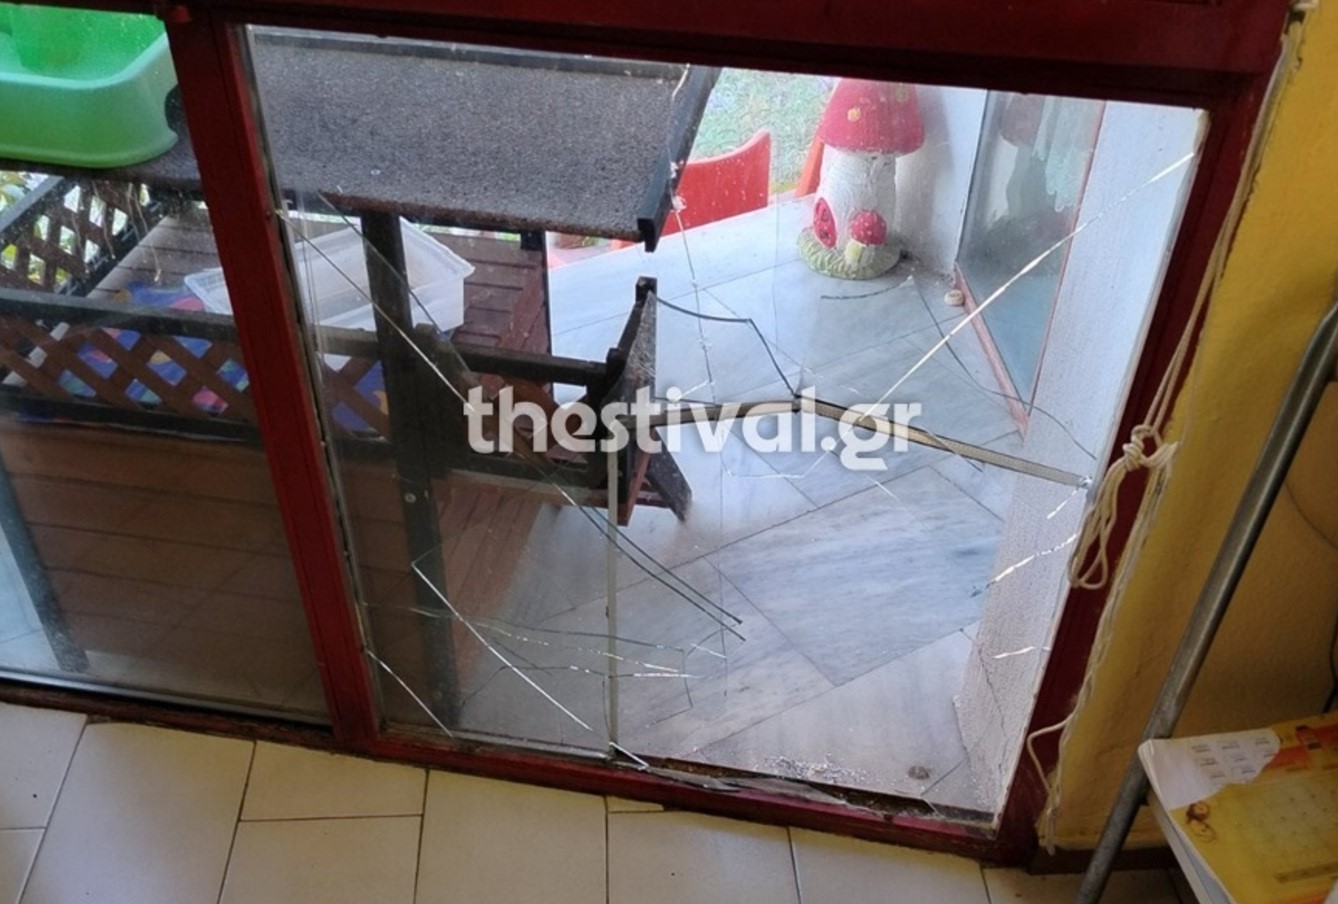 Απίστευτο περιστατικό σε ΚΑΠΗ της Θεσσαλονίκης &#8211; Άρπαξαν την τηλεόραση και το ψυγείο και έφυγαν σαν κύριοι από την κεντρική πόρτα